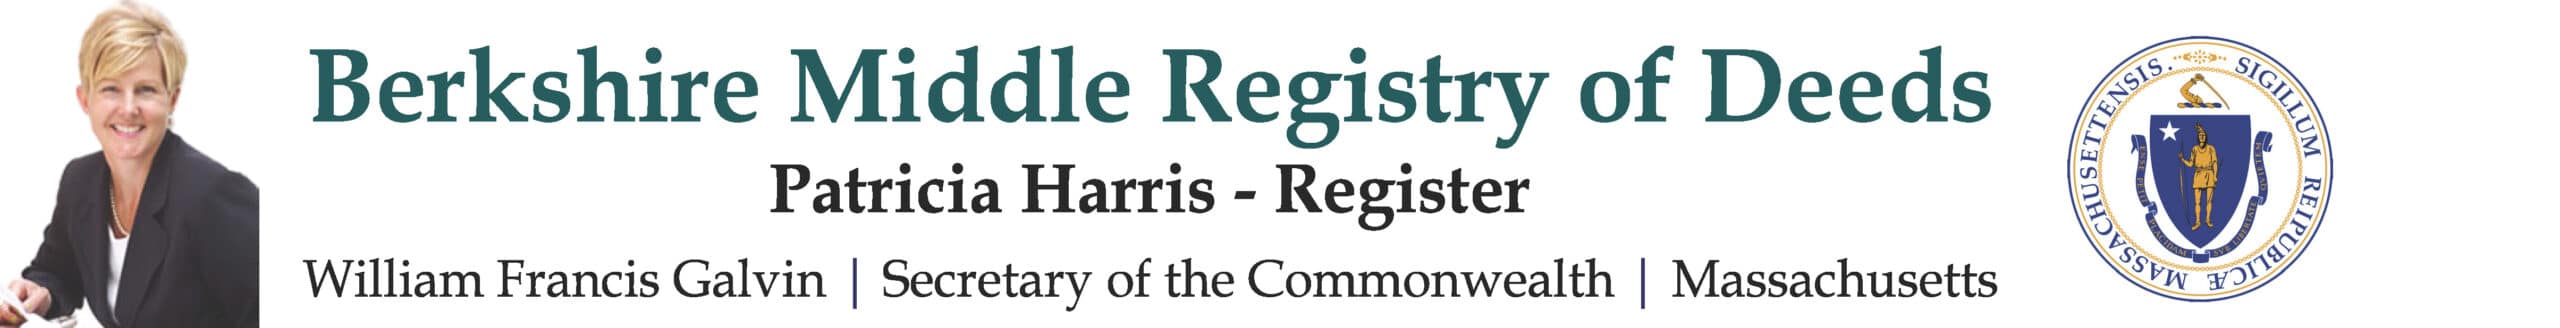 Berkshire Middle Registry of Deeds